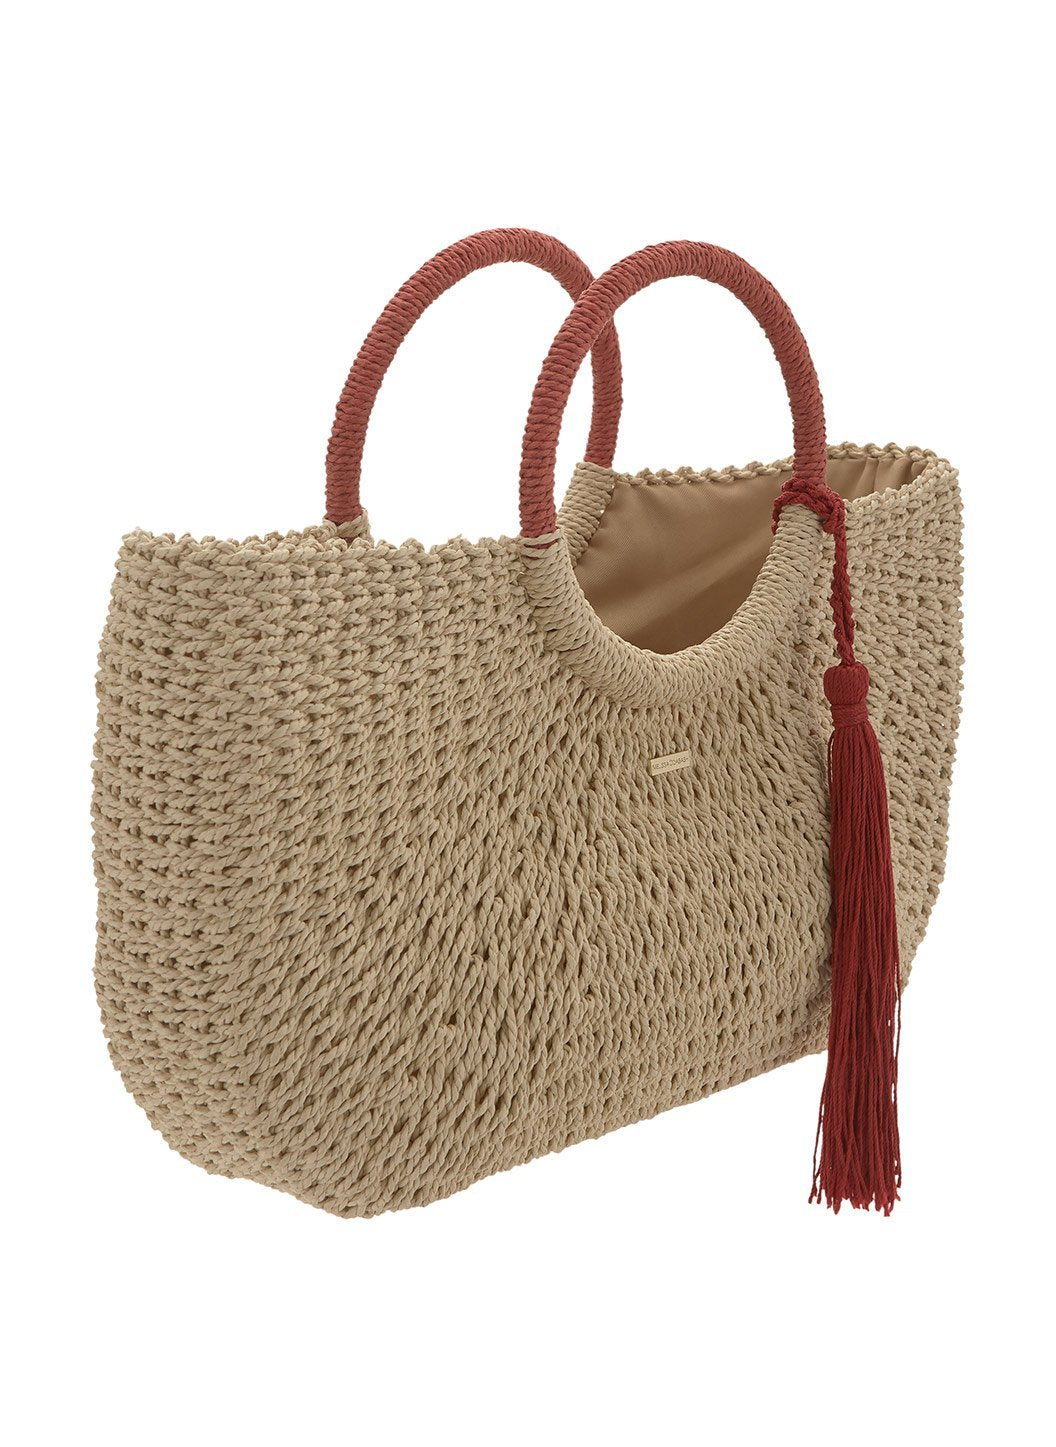 sorrento woven basket bag natural cinnamon 2019 2